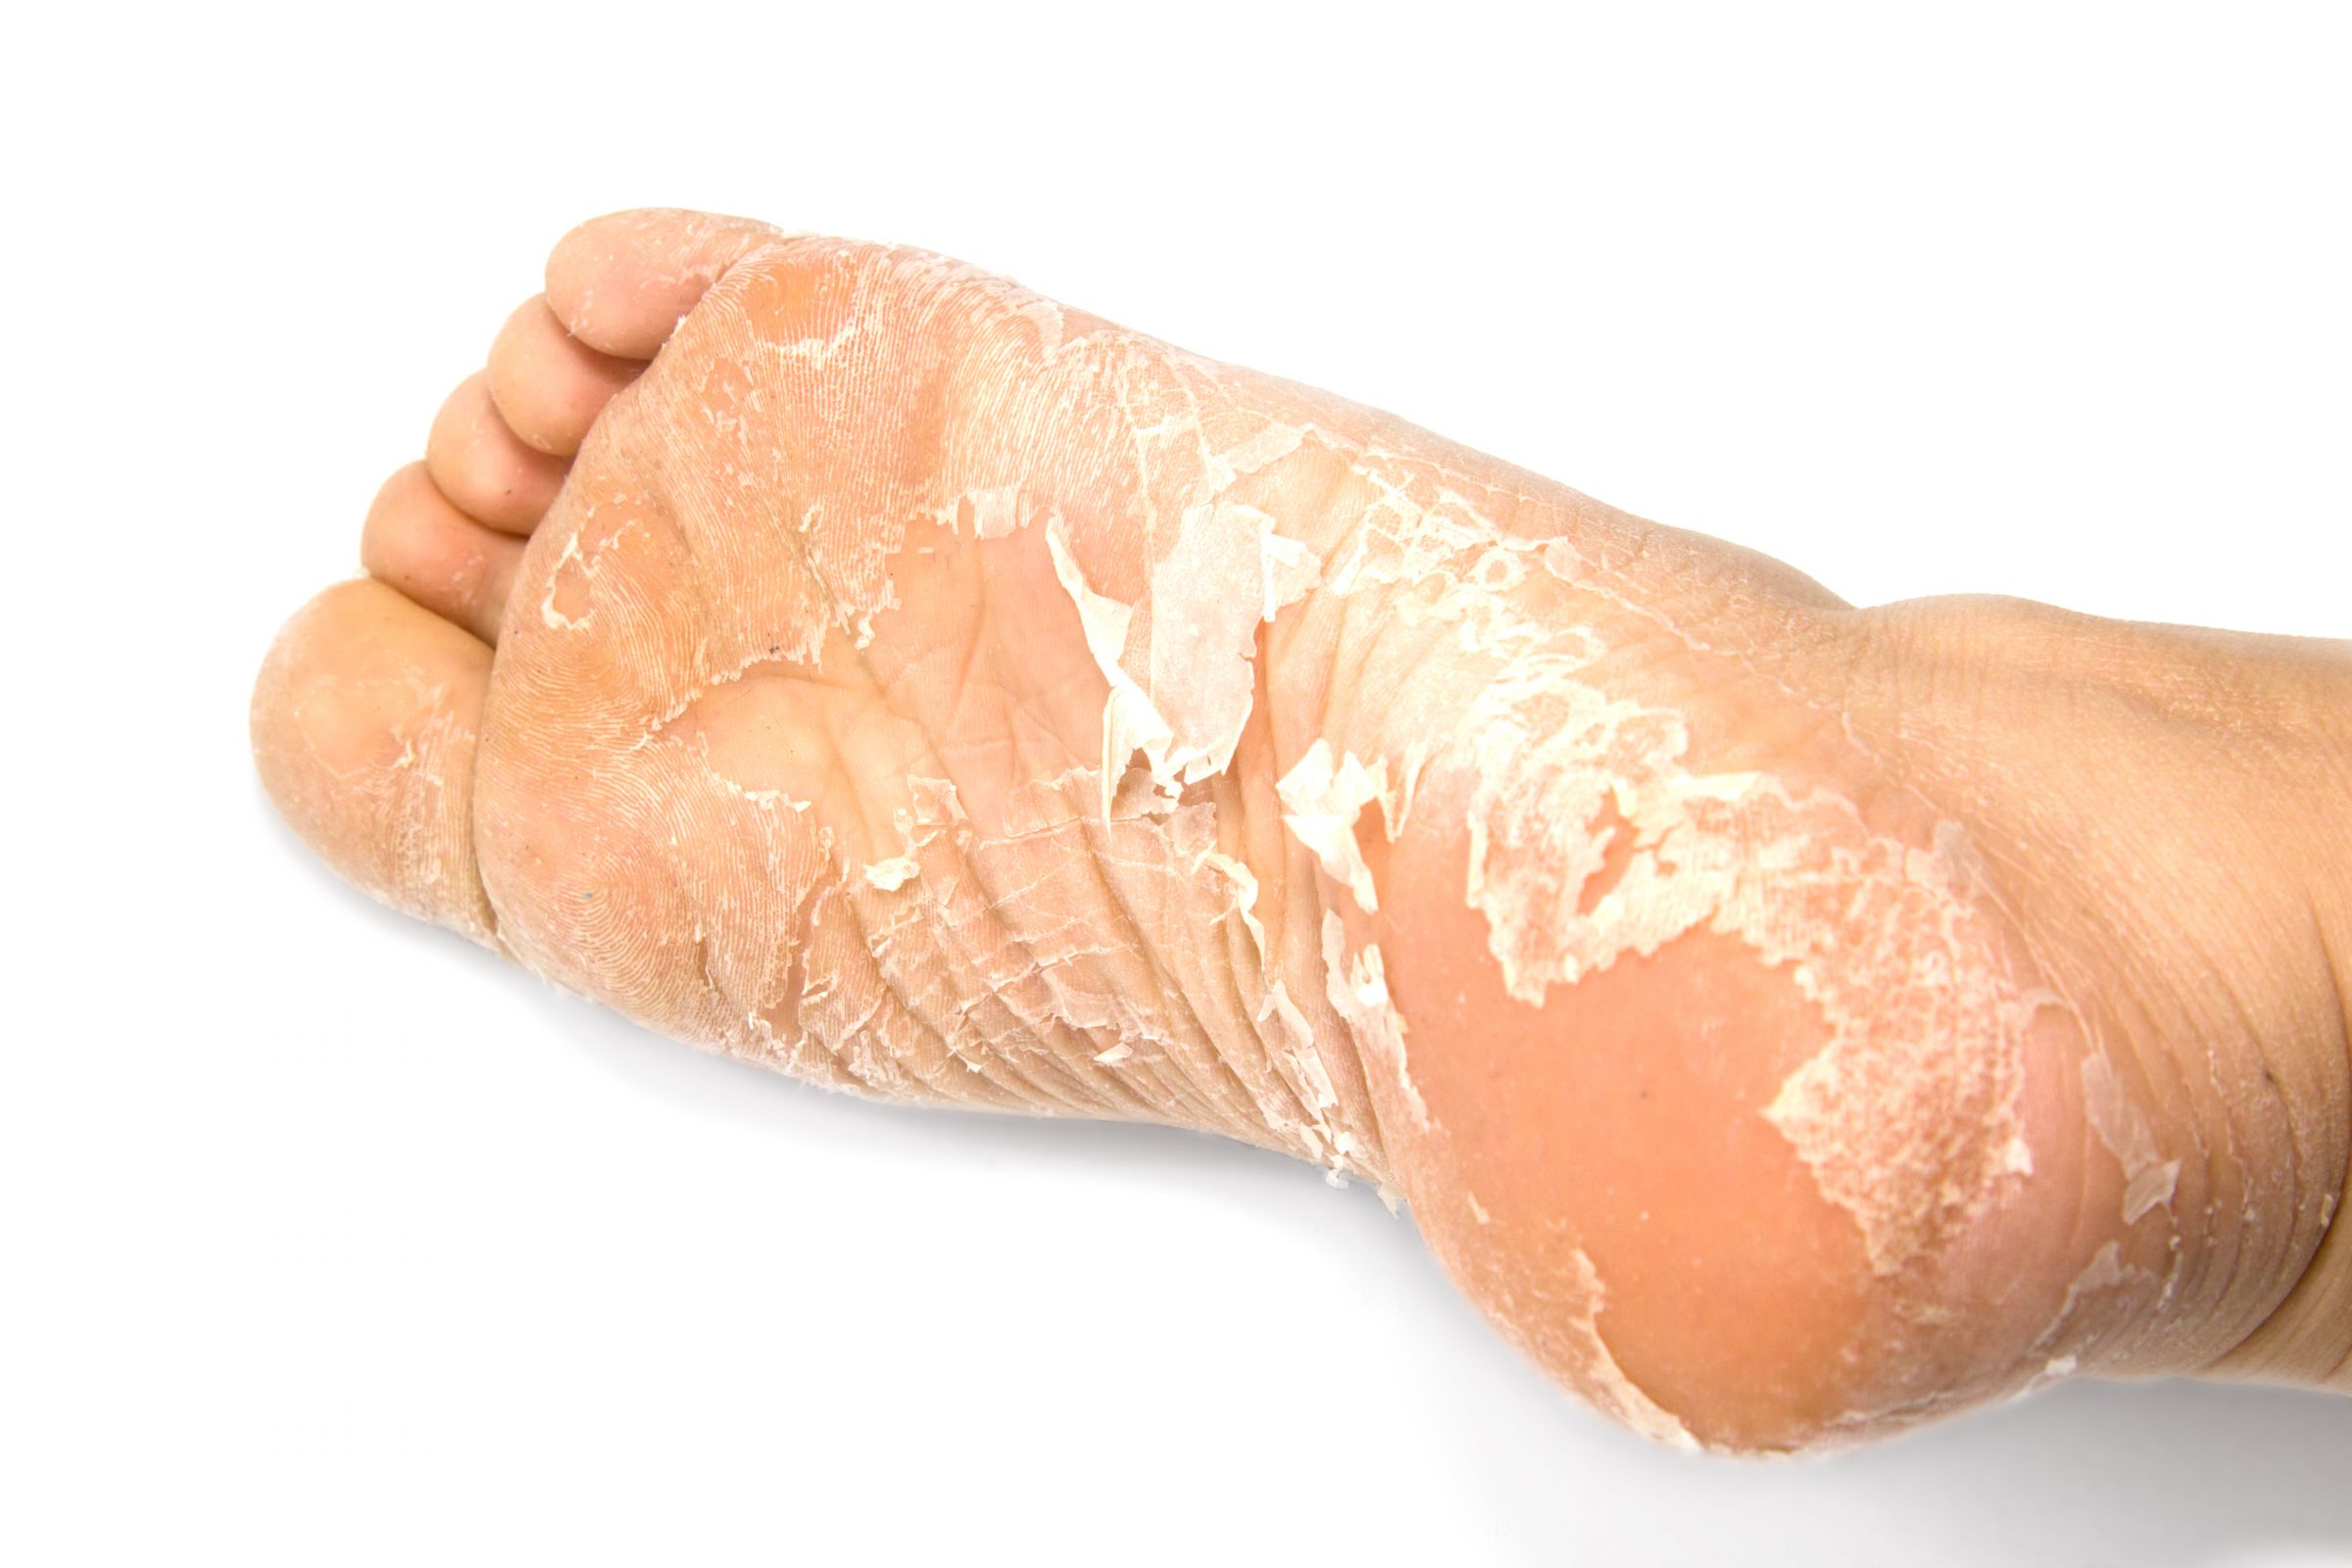 Mặt nạ lột chân là một trong những loại mặt nạ chân mà khách hàng của BIOCROWN có thể mua.